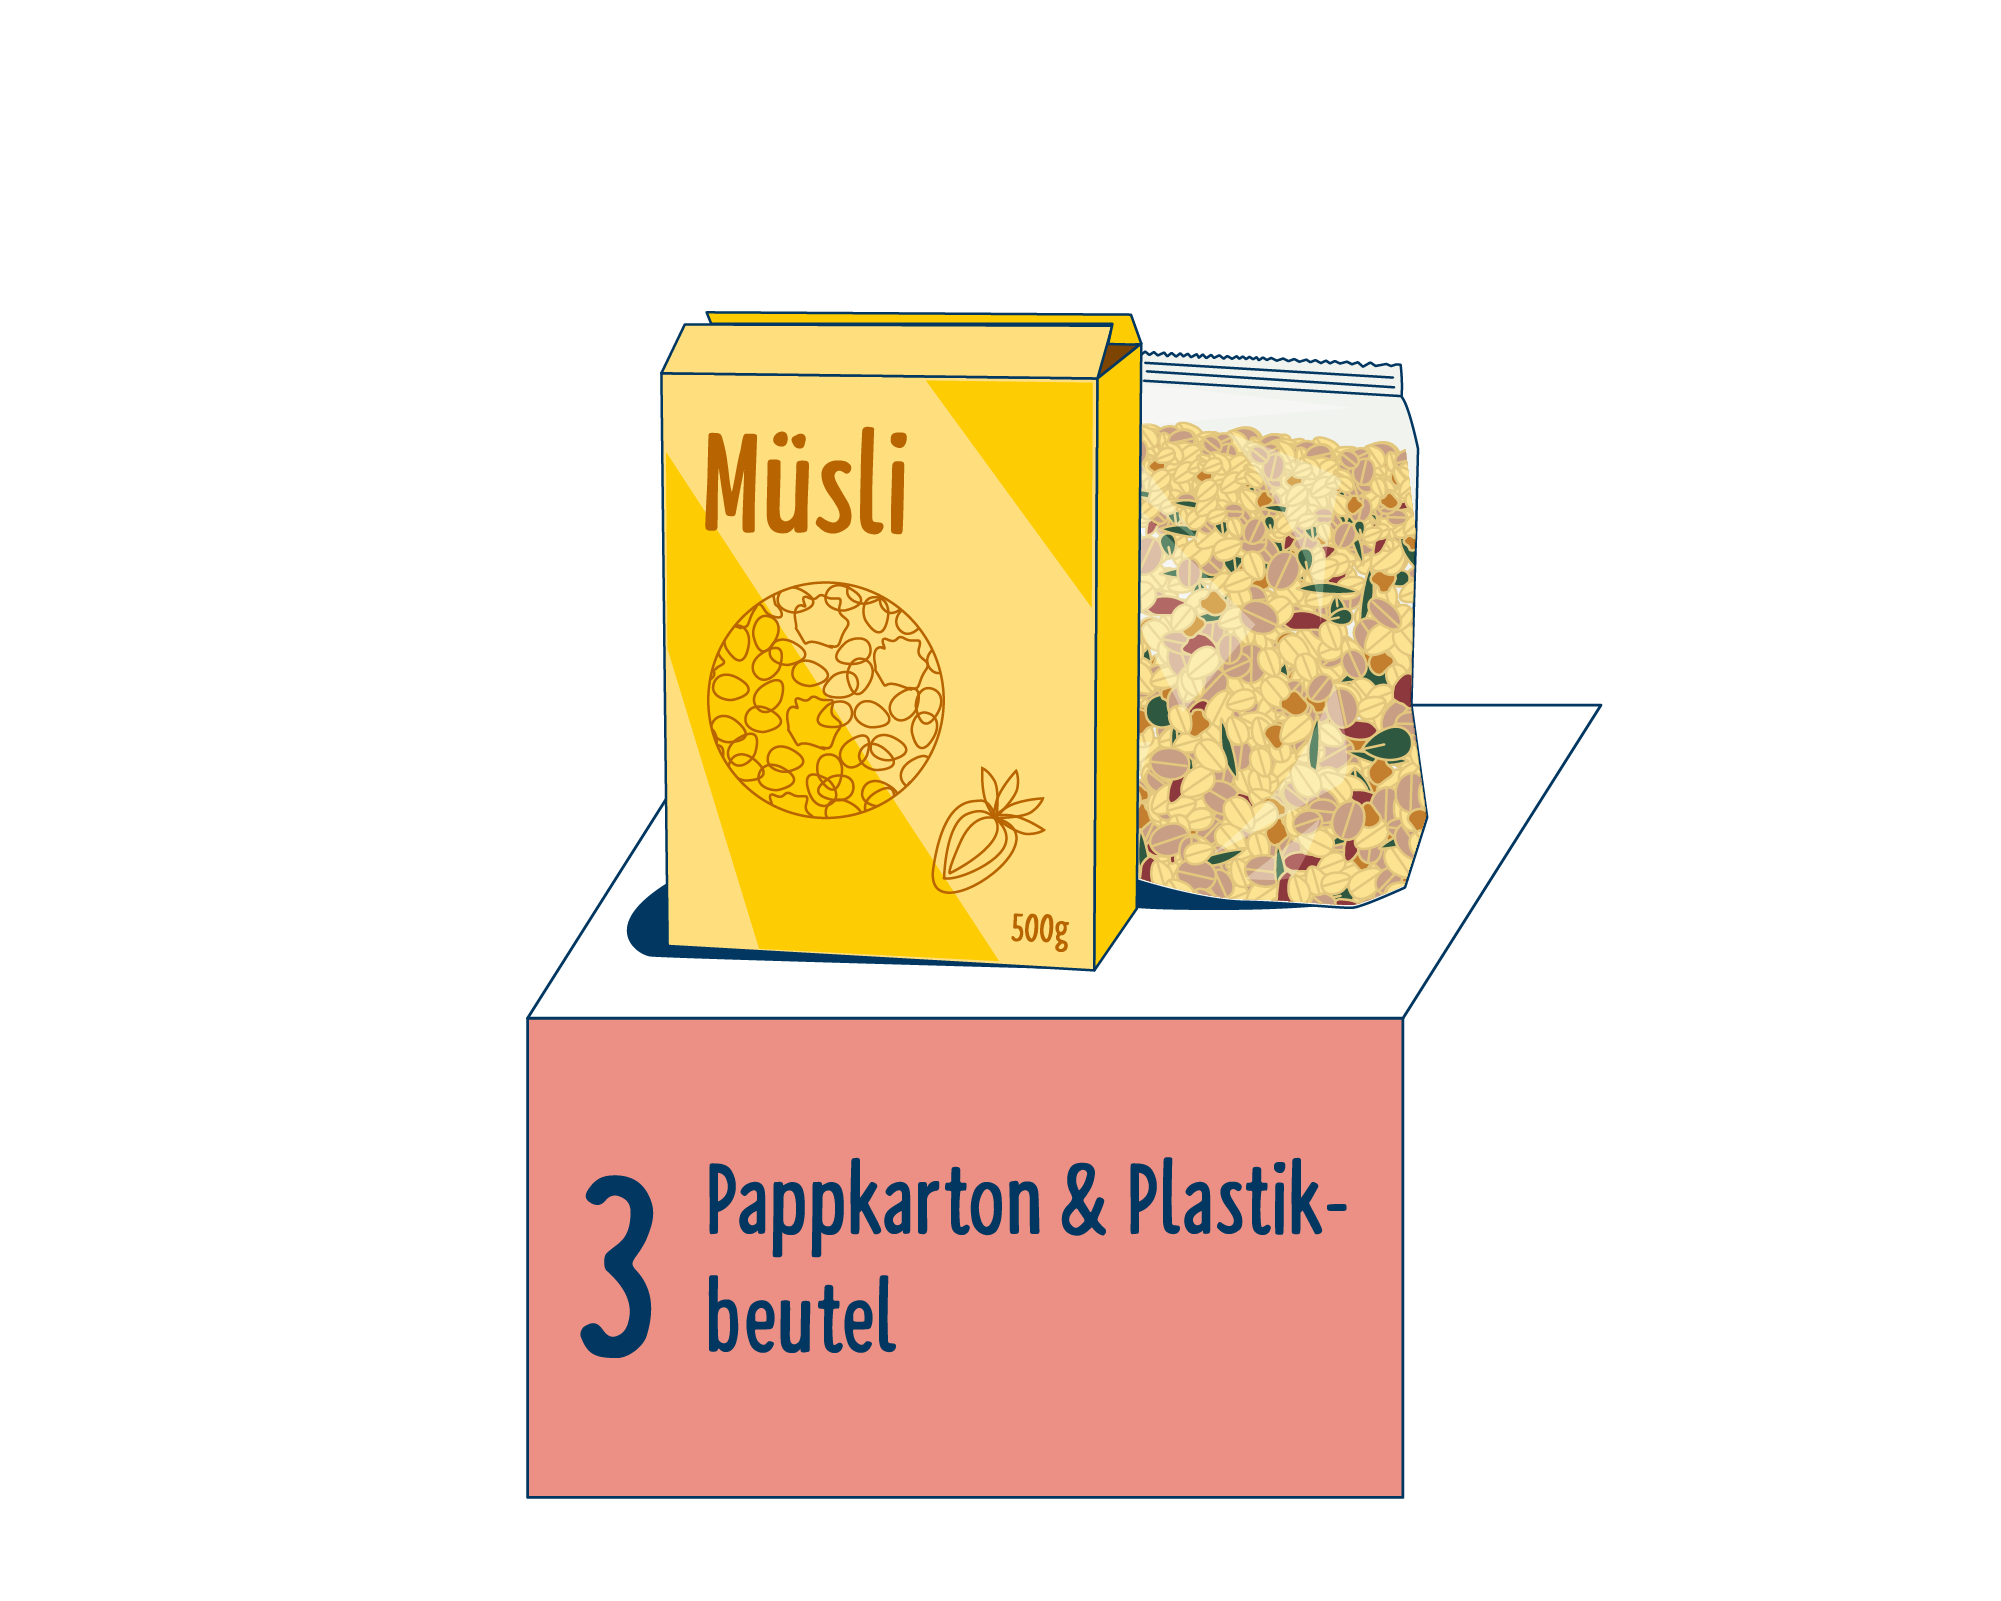 Bild Produktverpackung von Müsli eingeordnet auf Platz 3, bestehend aus Pappkarton & Plastik-Beutel.